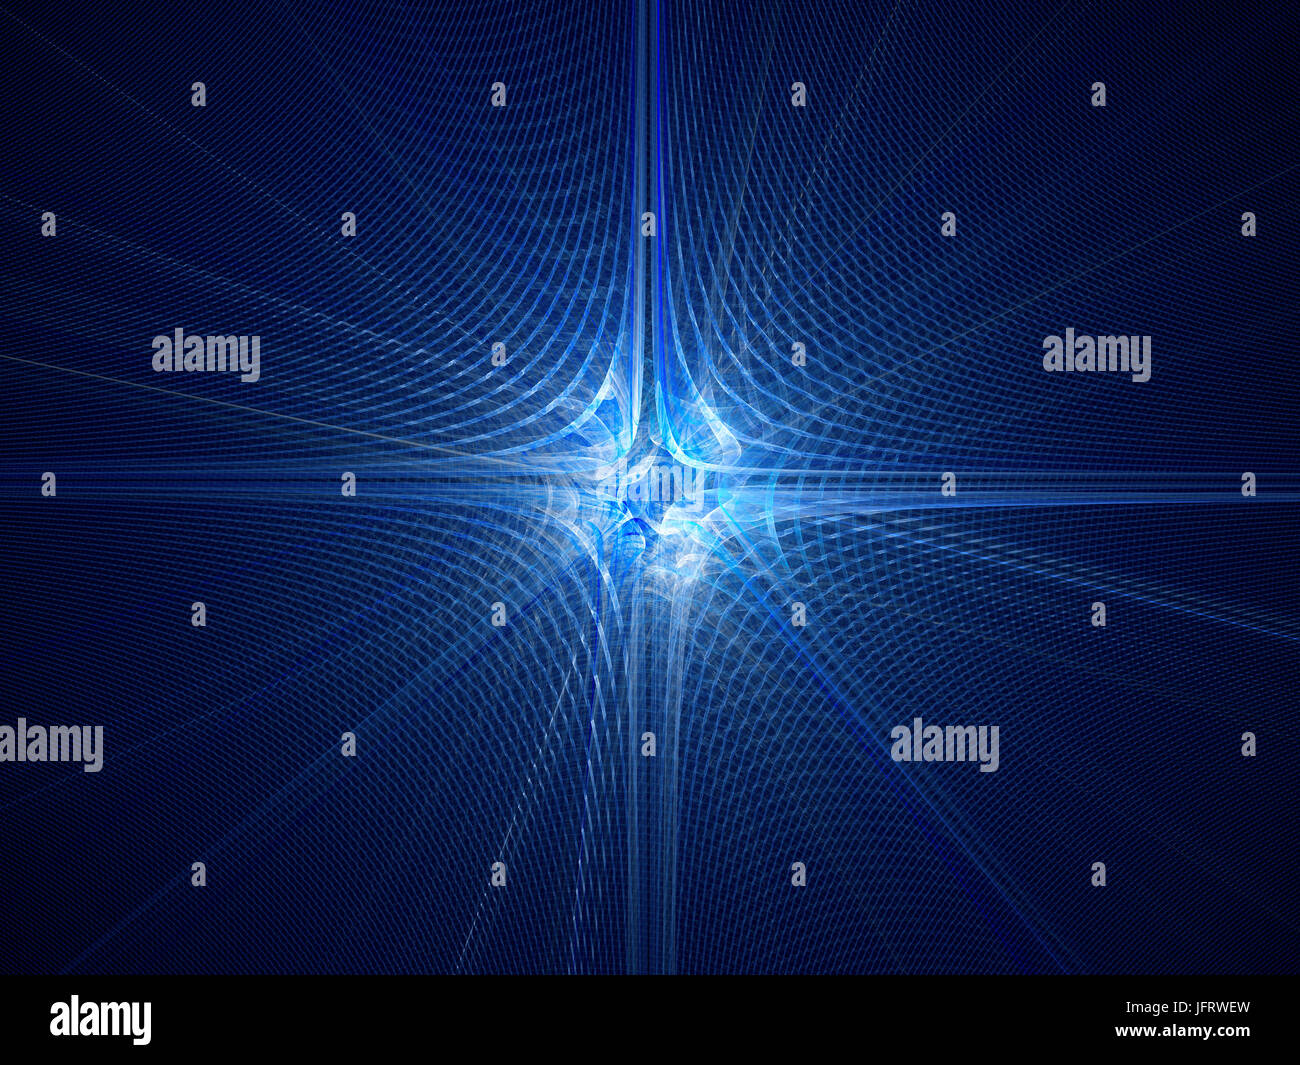 La mécanique quantique rougeoyant bleu, avec des particules d'attribution de l'onde, générée par ordinateur abstract background fractale, rendu 3D Banque D'Images